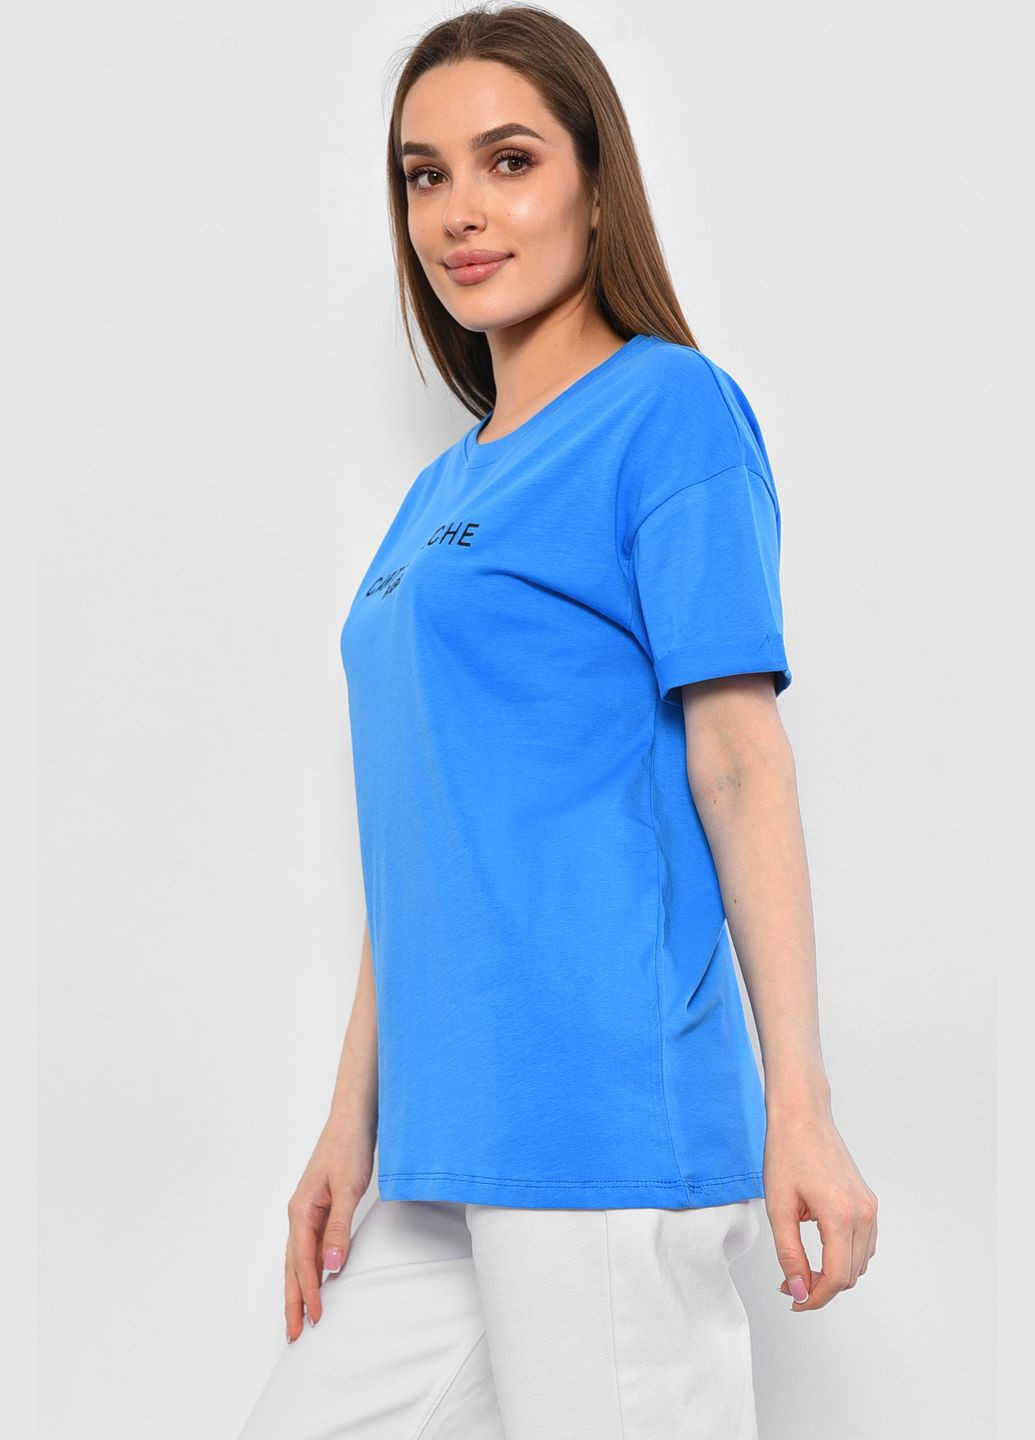 Синяя летняя футболка женская синего цвета Let's Shop